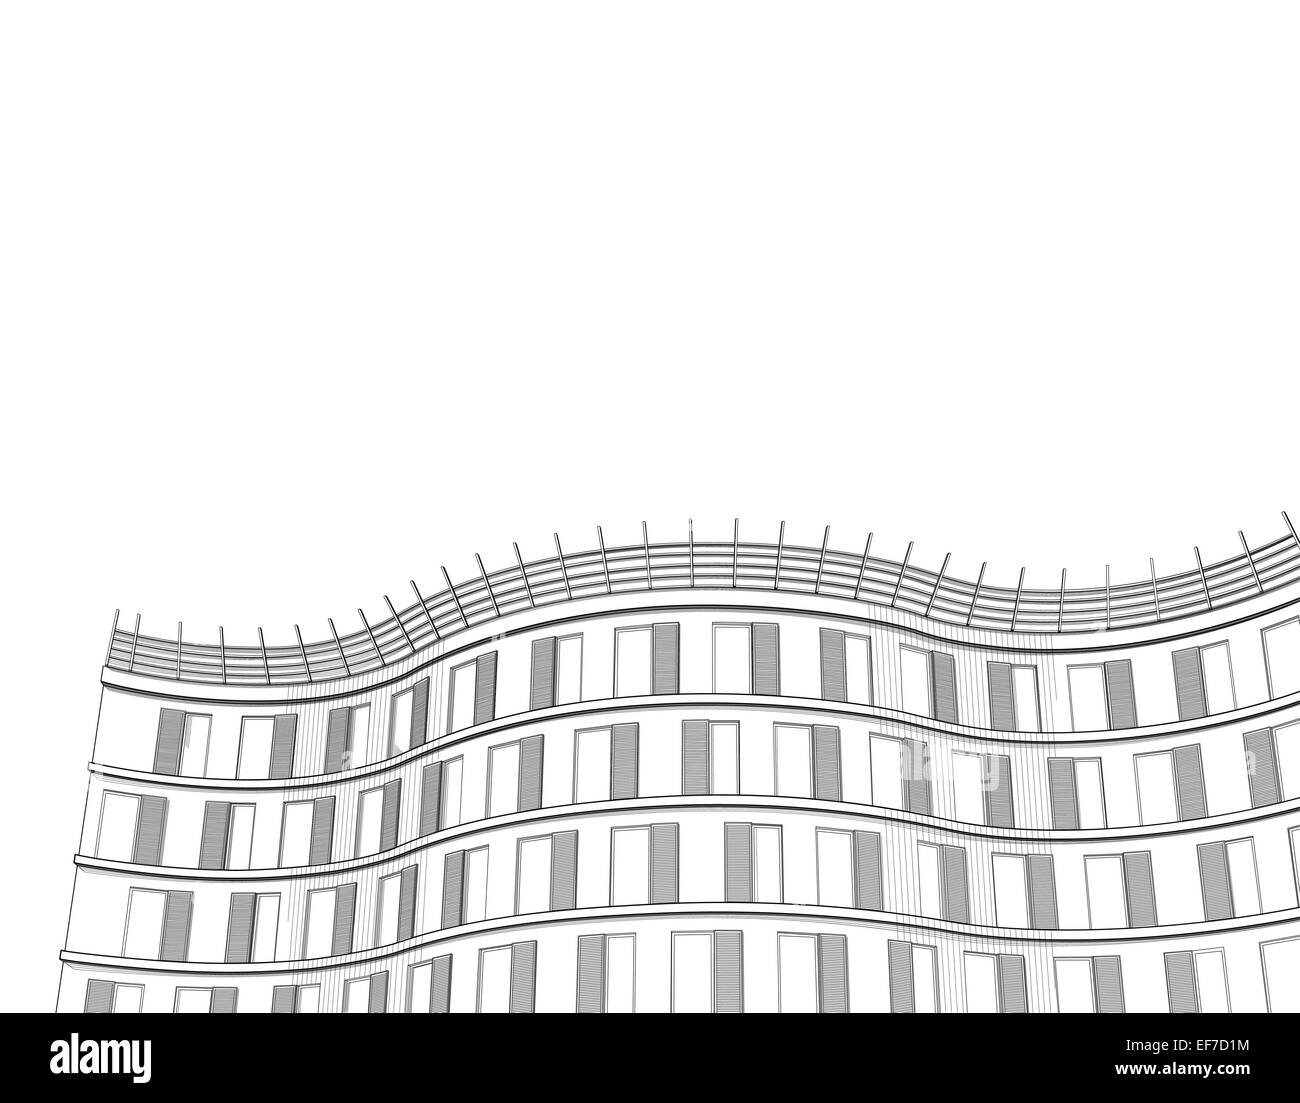 Architecture vecteur fond noir et blanc avec appartement moderne ou bureau immeuble de plusieurs étages Illustration de Vecteur